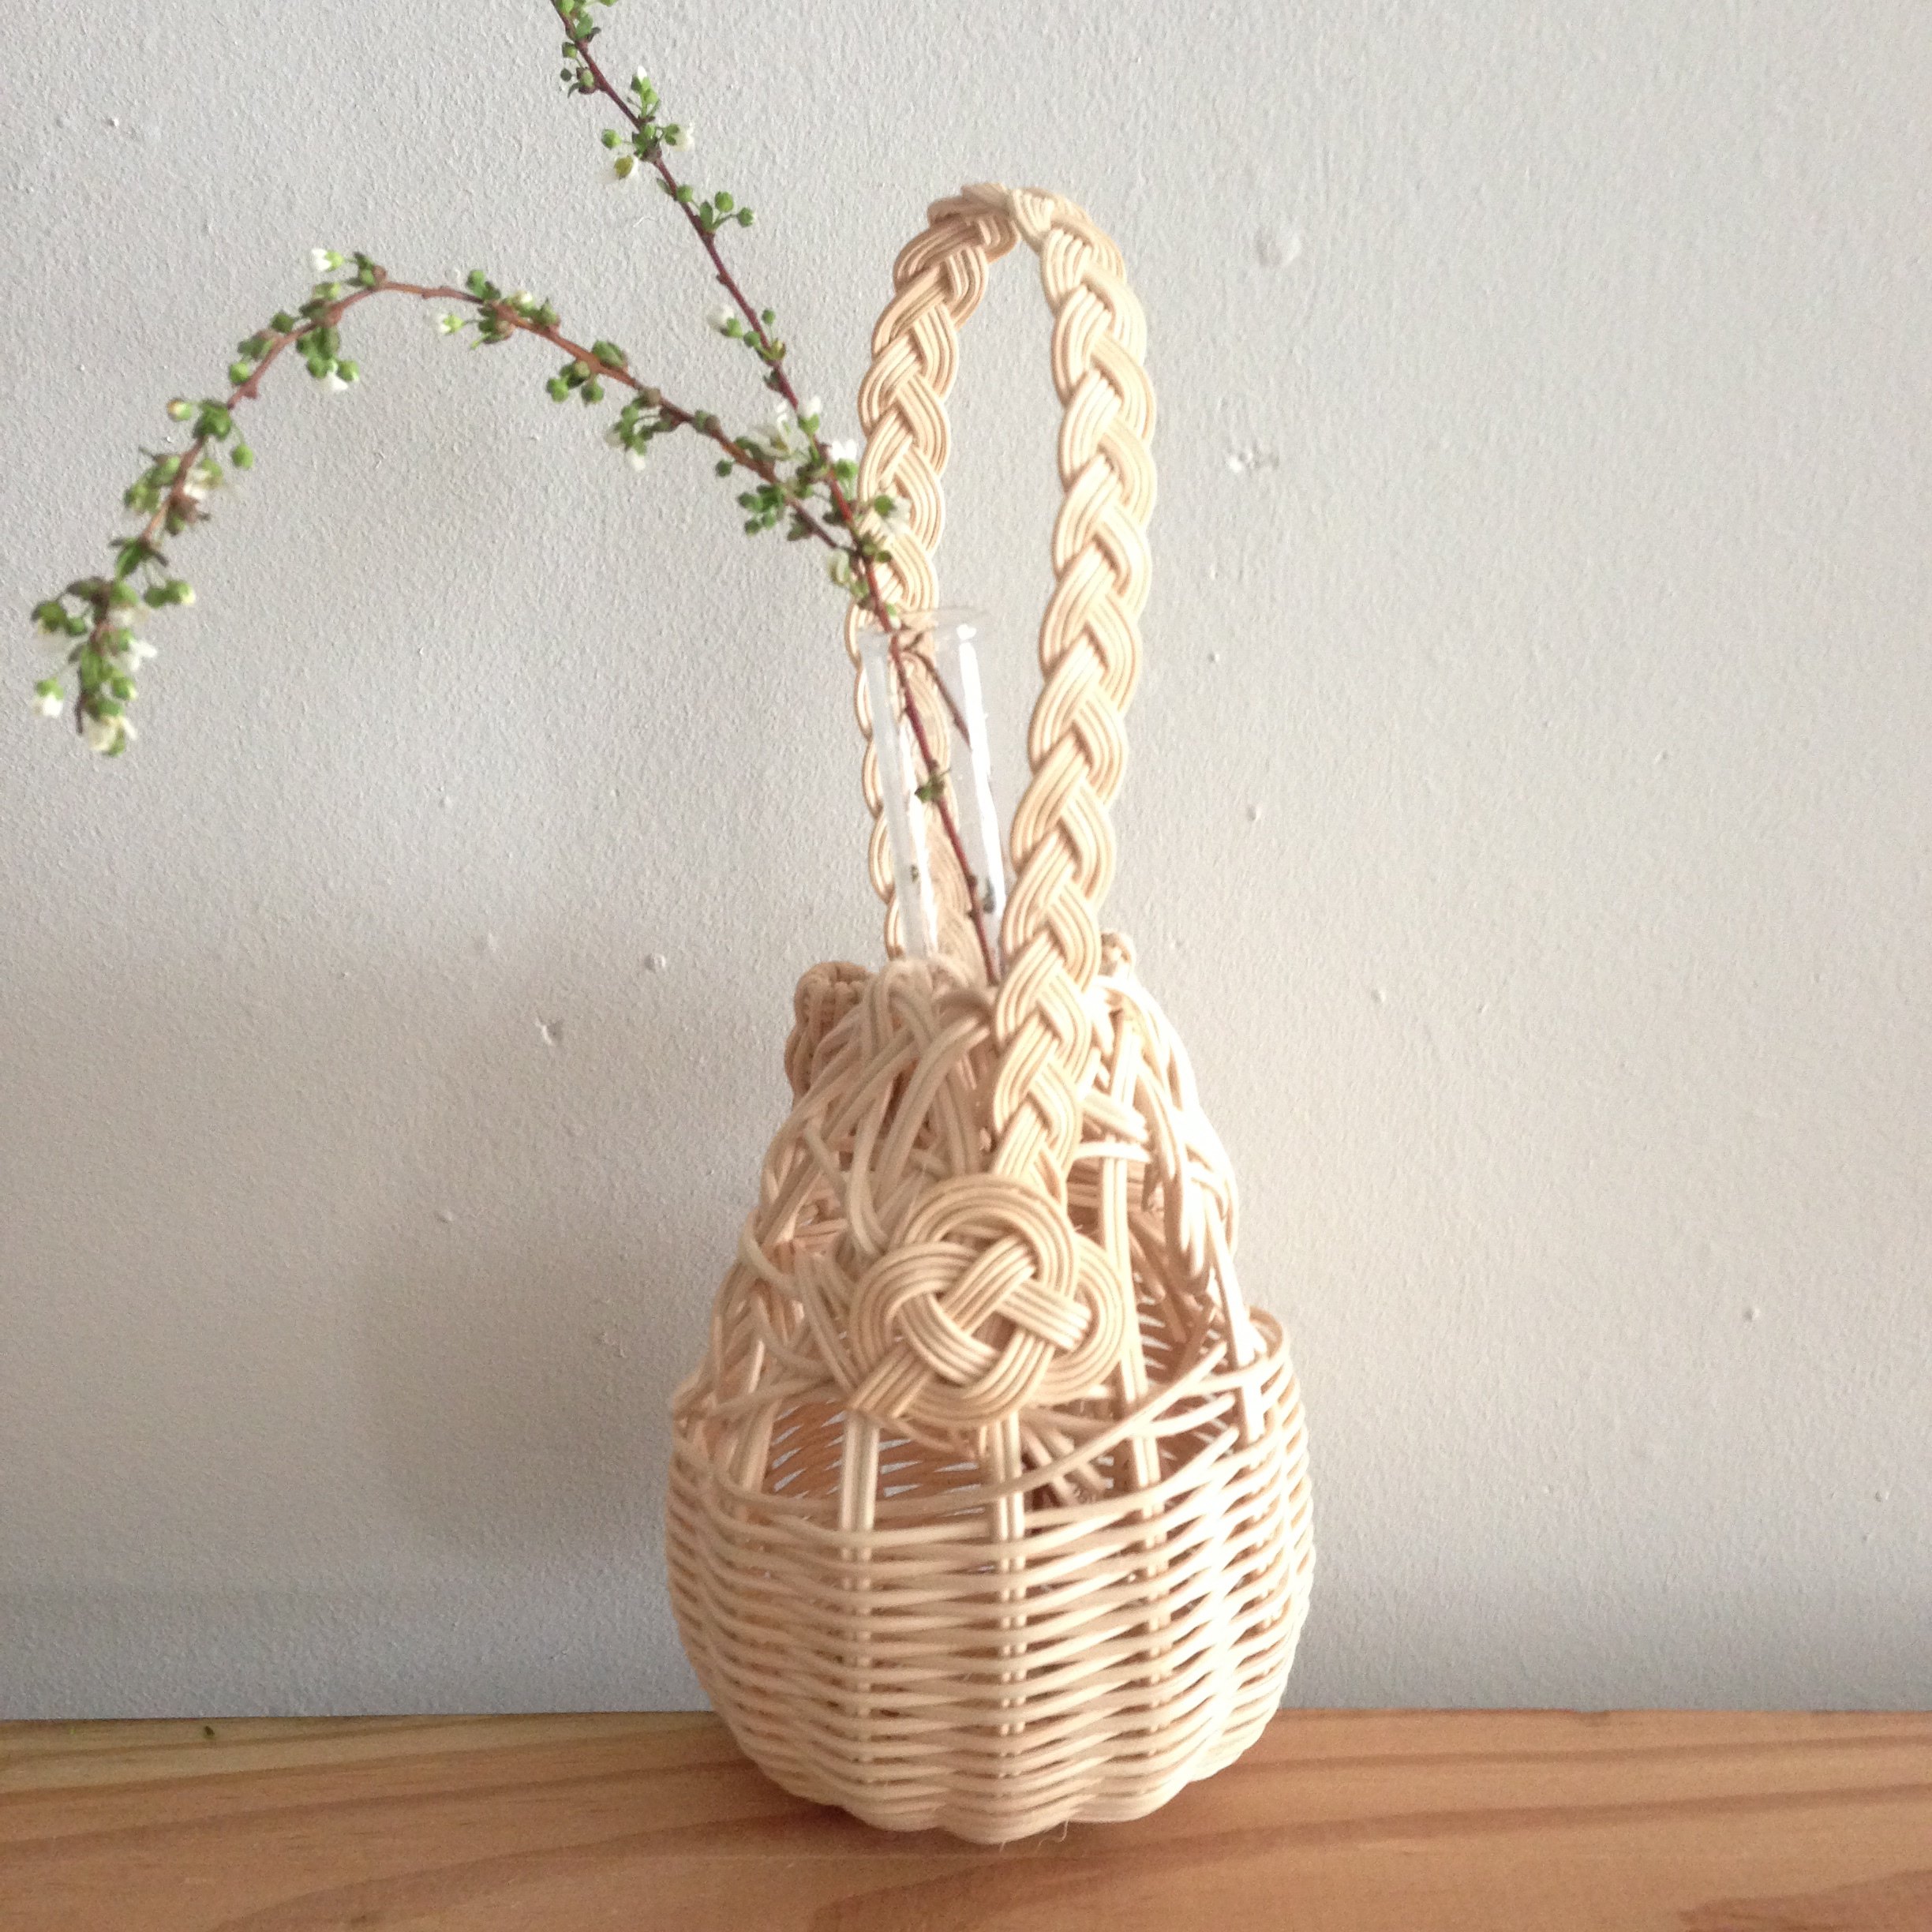 YOSHIKOさんと籐で編む 春の一輪挿しワークショップ : Bahar